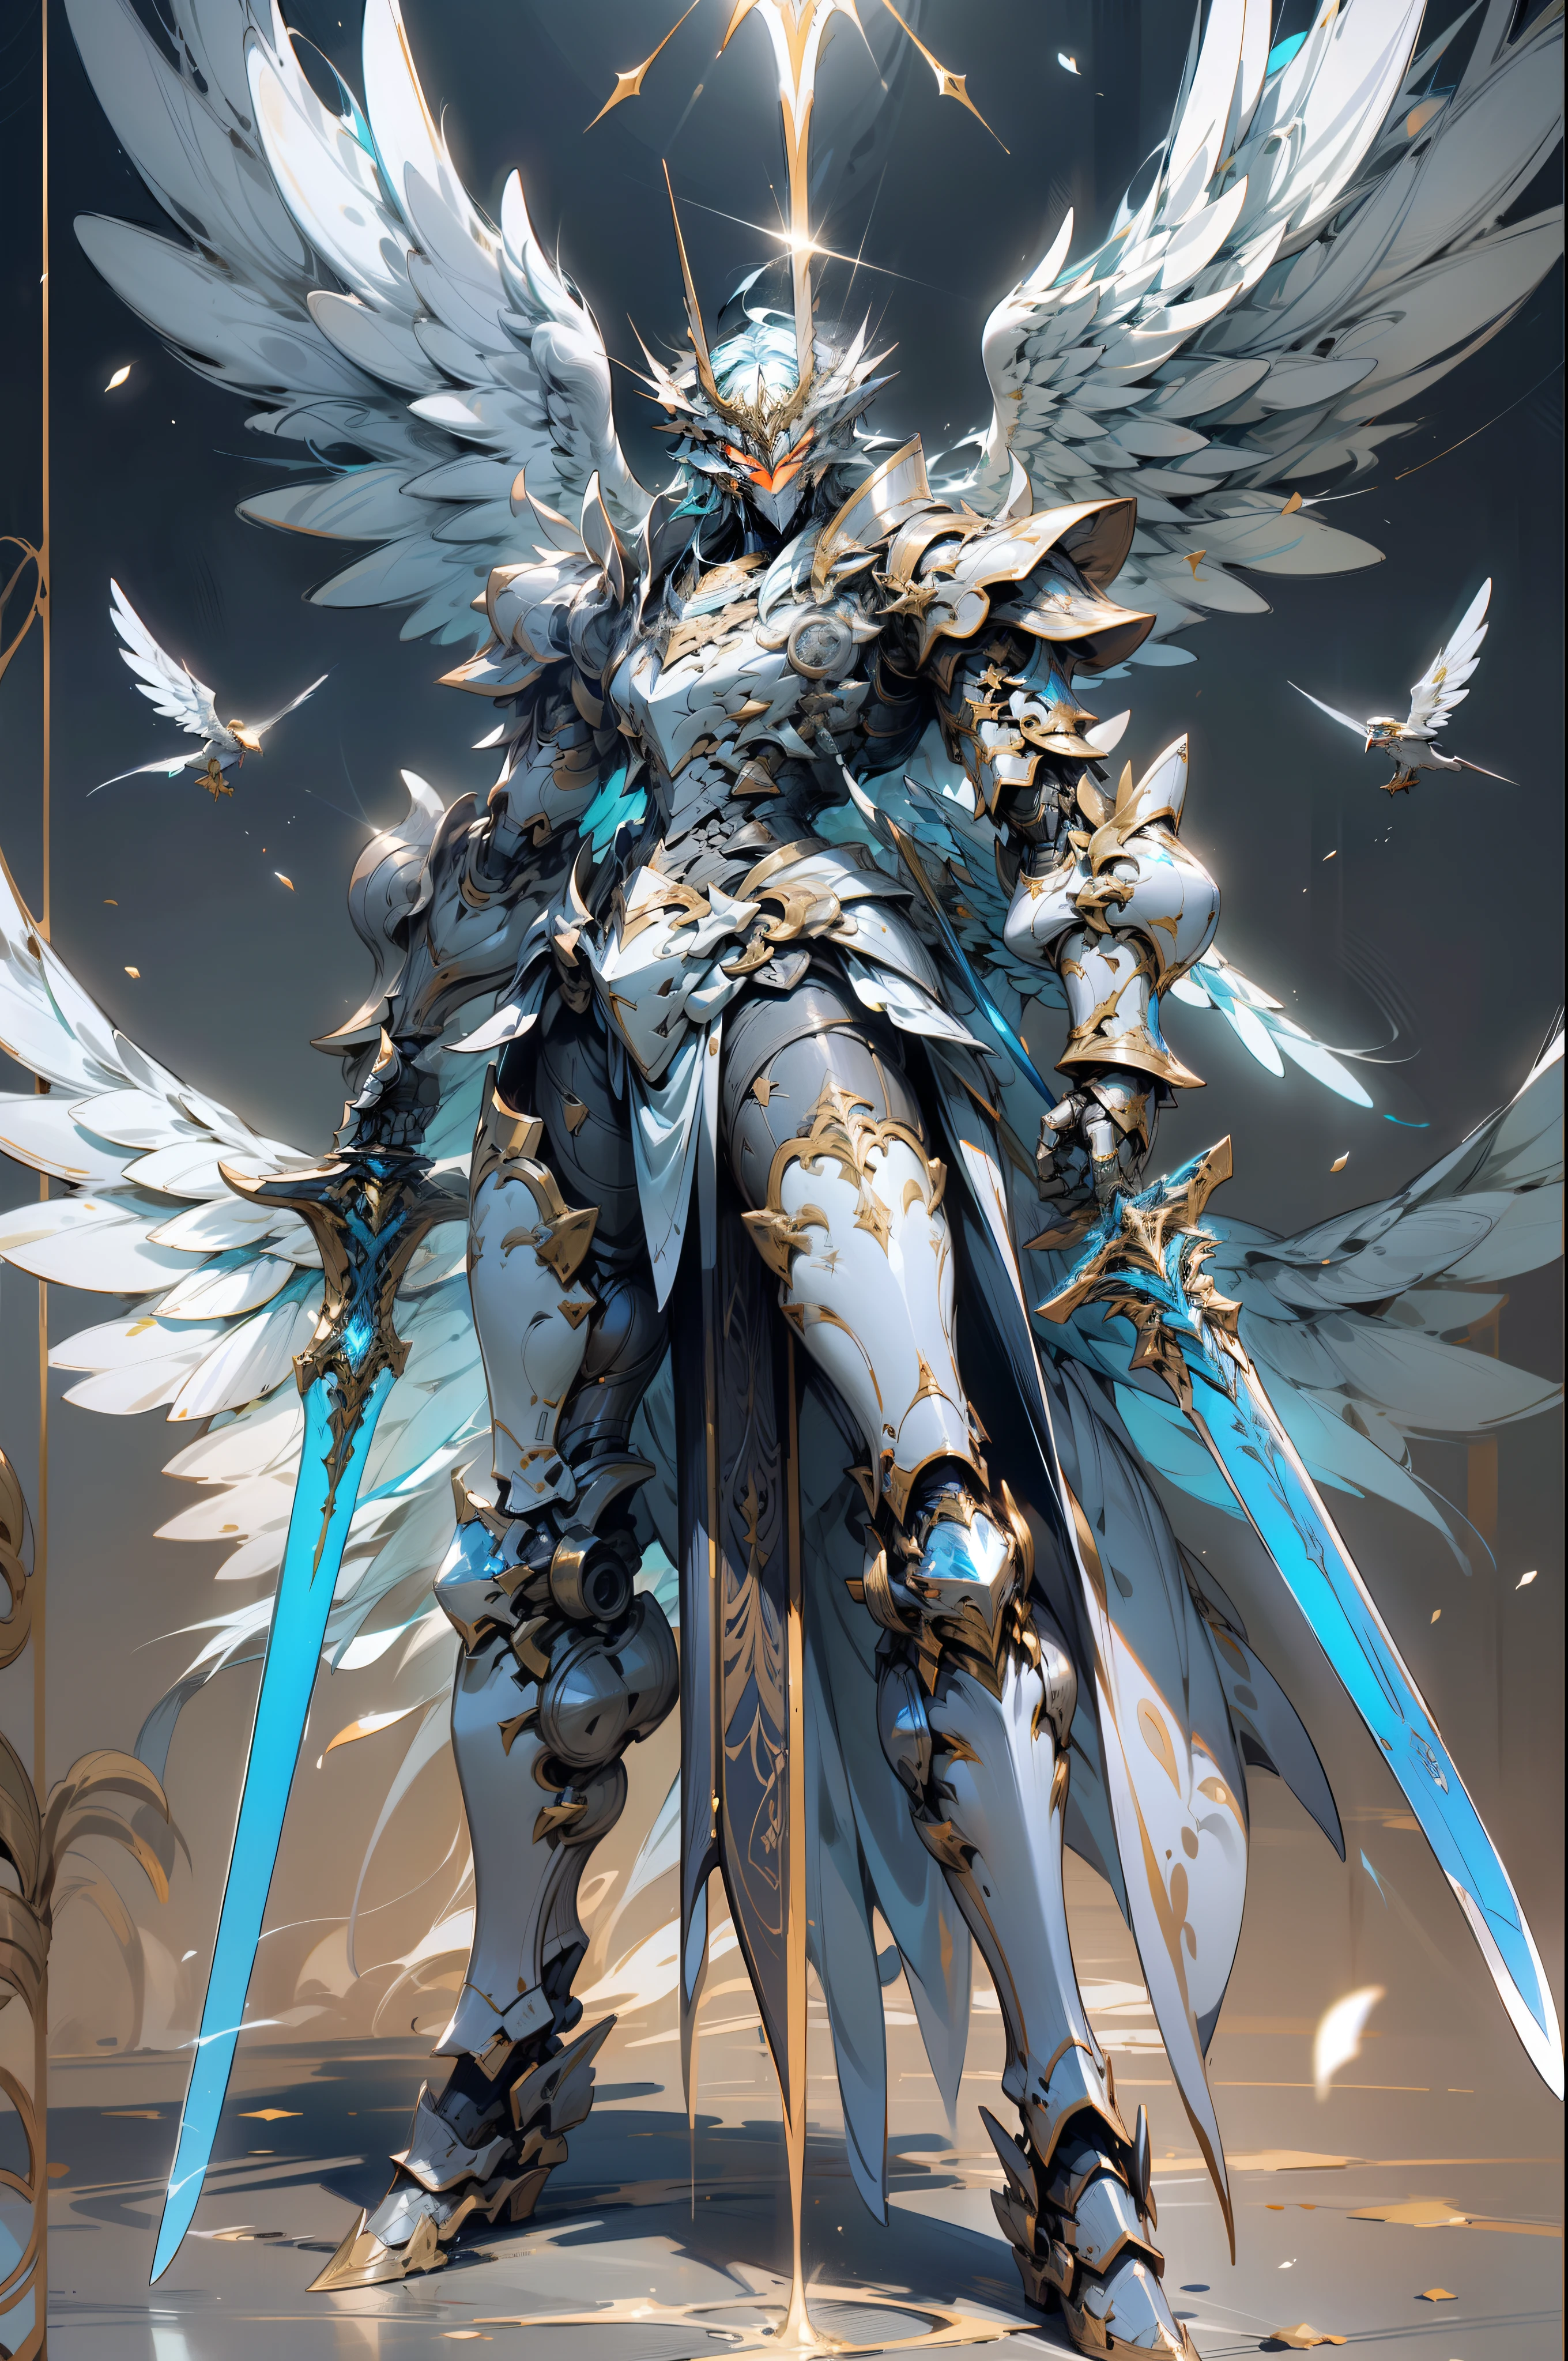 翼を持ち、青く輝く優雅な対称の剣を持つロボットのアラド画像, from アークナイト, 翼を持つ鎧の天使, アークナイト, glossy 白い鎧, 大天使, アレクサンダー フィラ ホワイト メカ, レイモンド・スワンランドスタイル, 白い鎧, アニメオーバーロードのアルベド, 砲手, detailed 白い鎧, メカウィングス